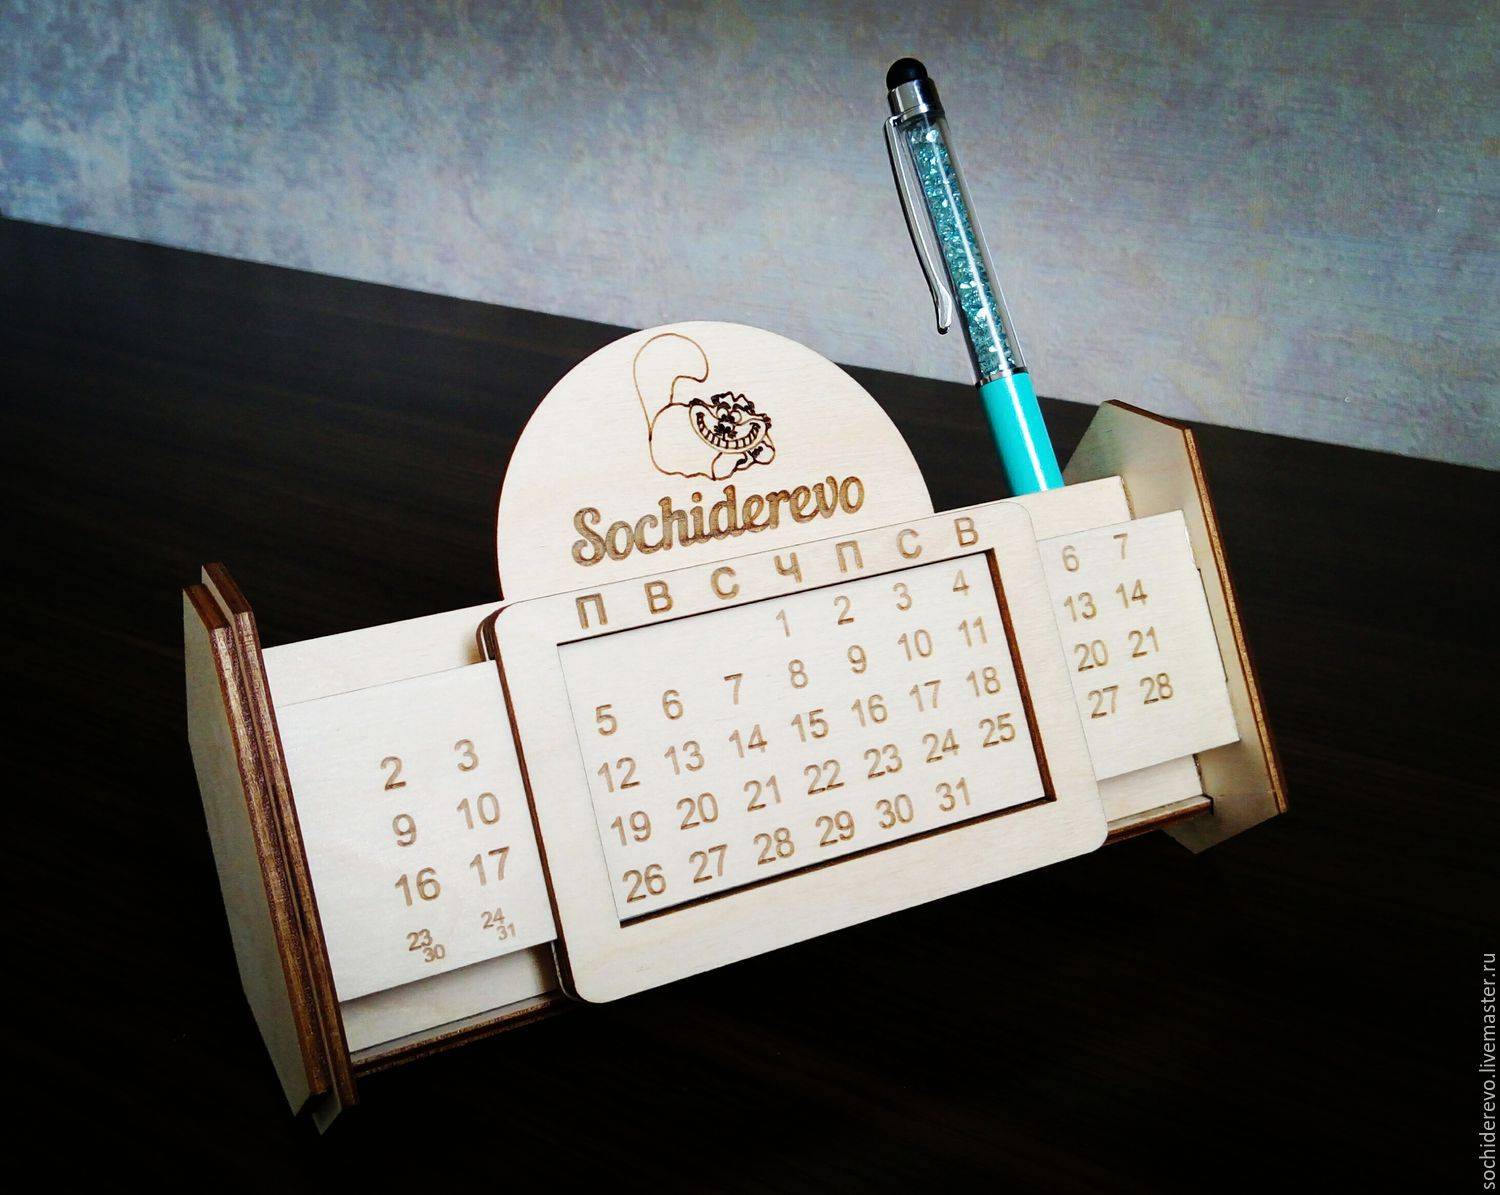 Как самому сделать настенный вечный календарь. вечный календарь своими руками: пошаговый мастер-класс с подробными пояснениями, фото и видео